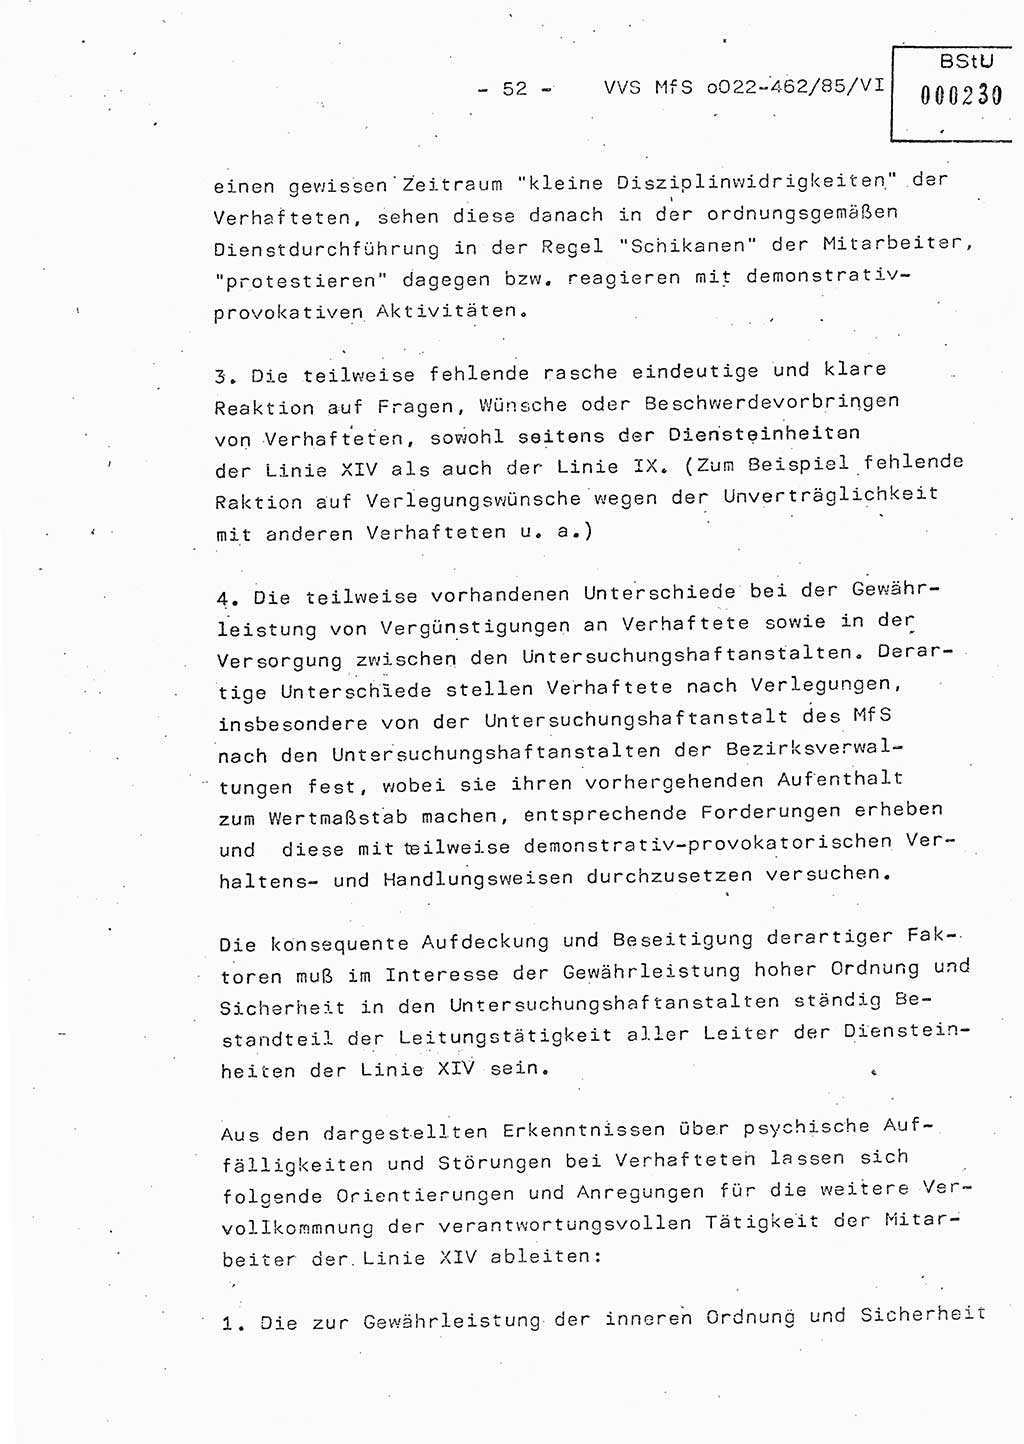 Der Untersuchungshaftvollzug im MfS, Schulungsmaterial Teil Ⅵ, Ministerium für Staatssicherheit [Deutsche Demokratische Republik (DDR)], Abteilung (Abt.) ⅩⅣ, Vertrauliche Verschlußsache (VVS) o022-462/85/Ⅵ, Berlin 1985, Seite 52 (Sch.-Mat. Ⅵ MfS DDR Abt. ⅩⅣ VVS o022-462/85/Ⅵ 1985, S. 52)